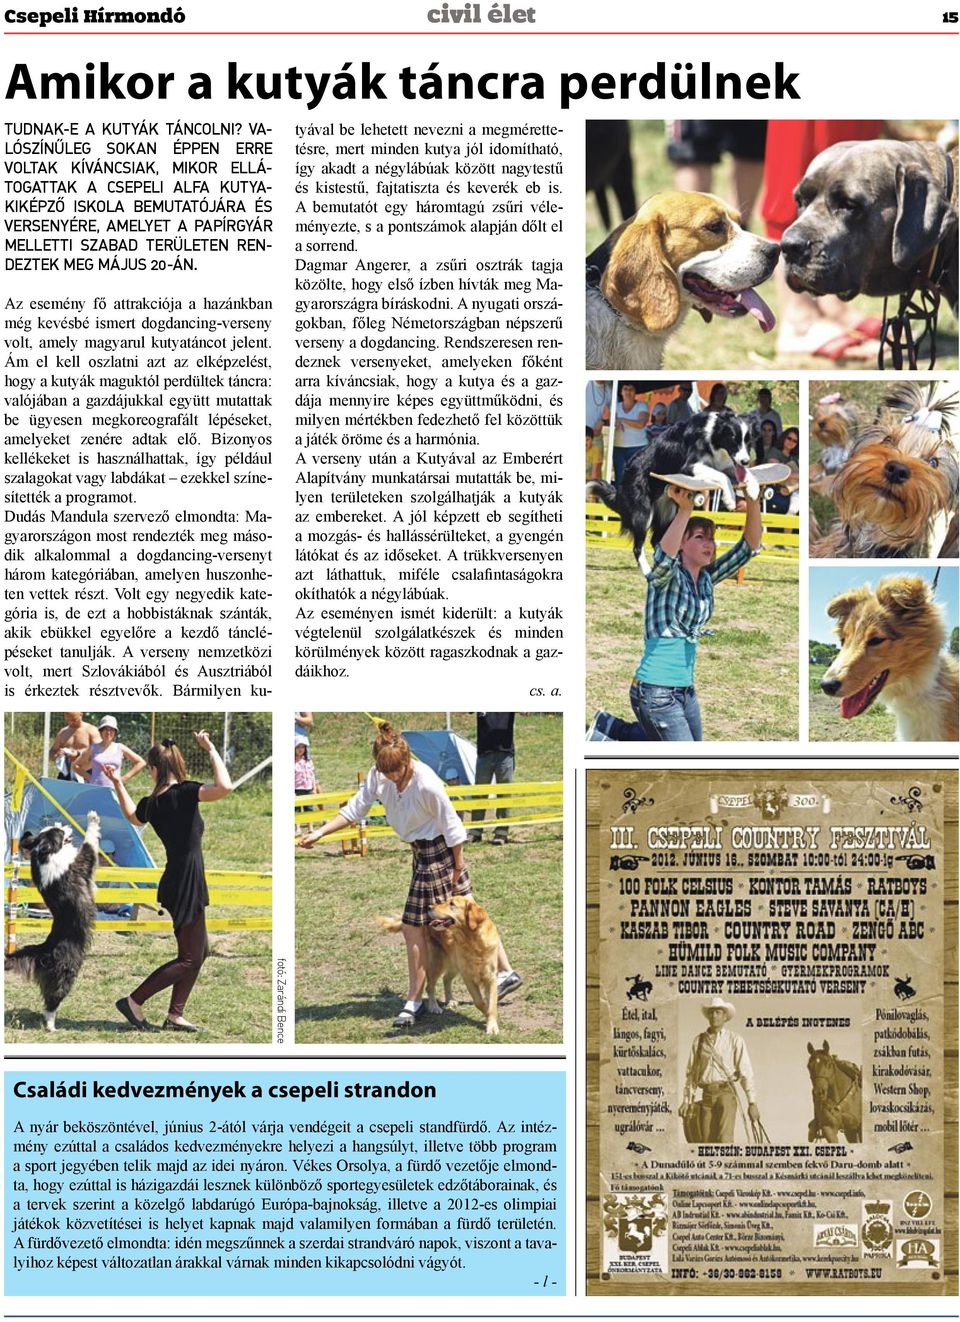 20-án. Az esemény fő attrakciója a hazánkban még kevésbé ismert dogdancing-verseny volt, amely magyarul kutyatáncot jelent.